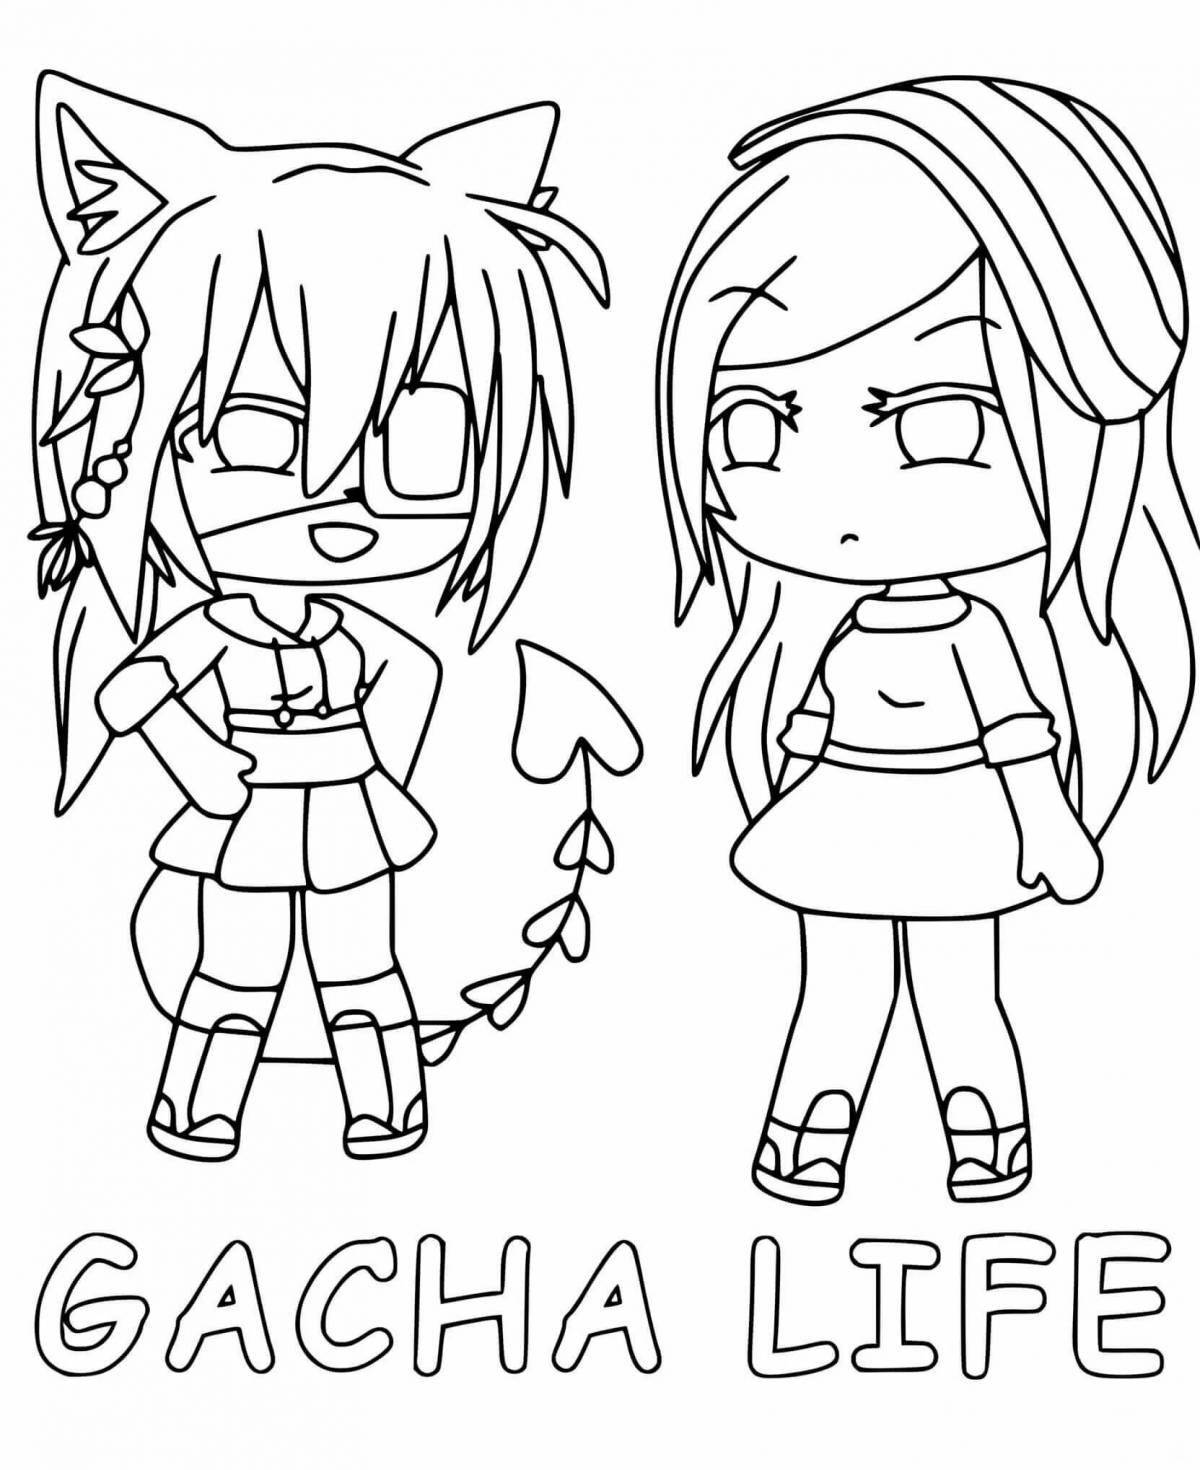 Gacha life coloring page